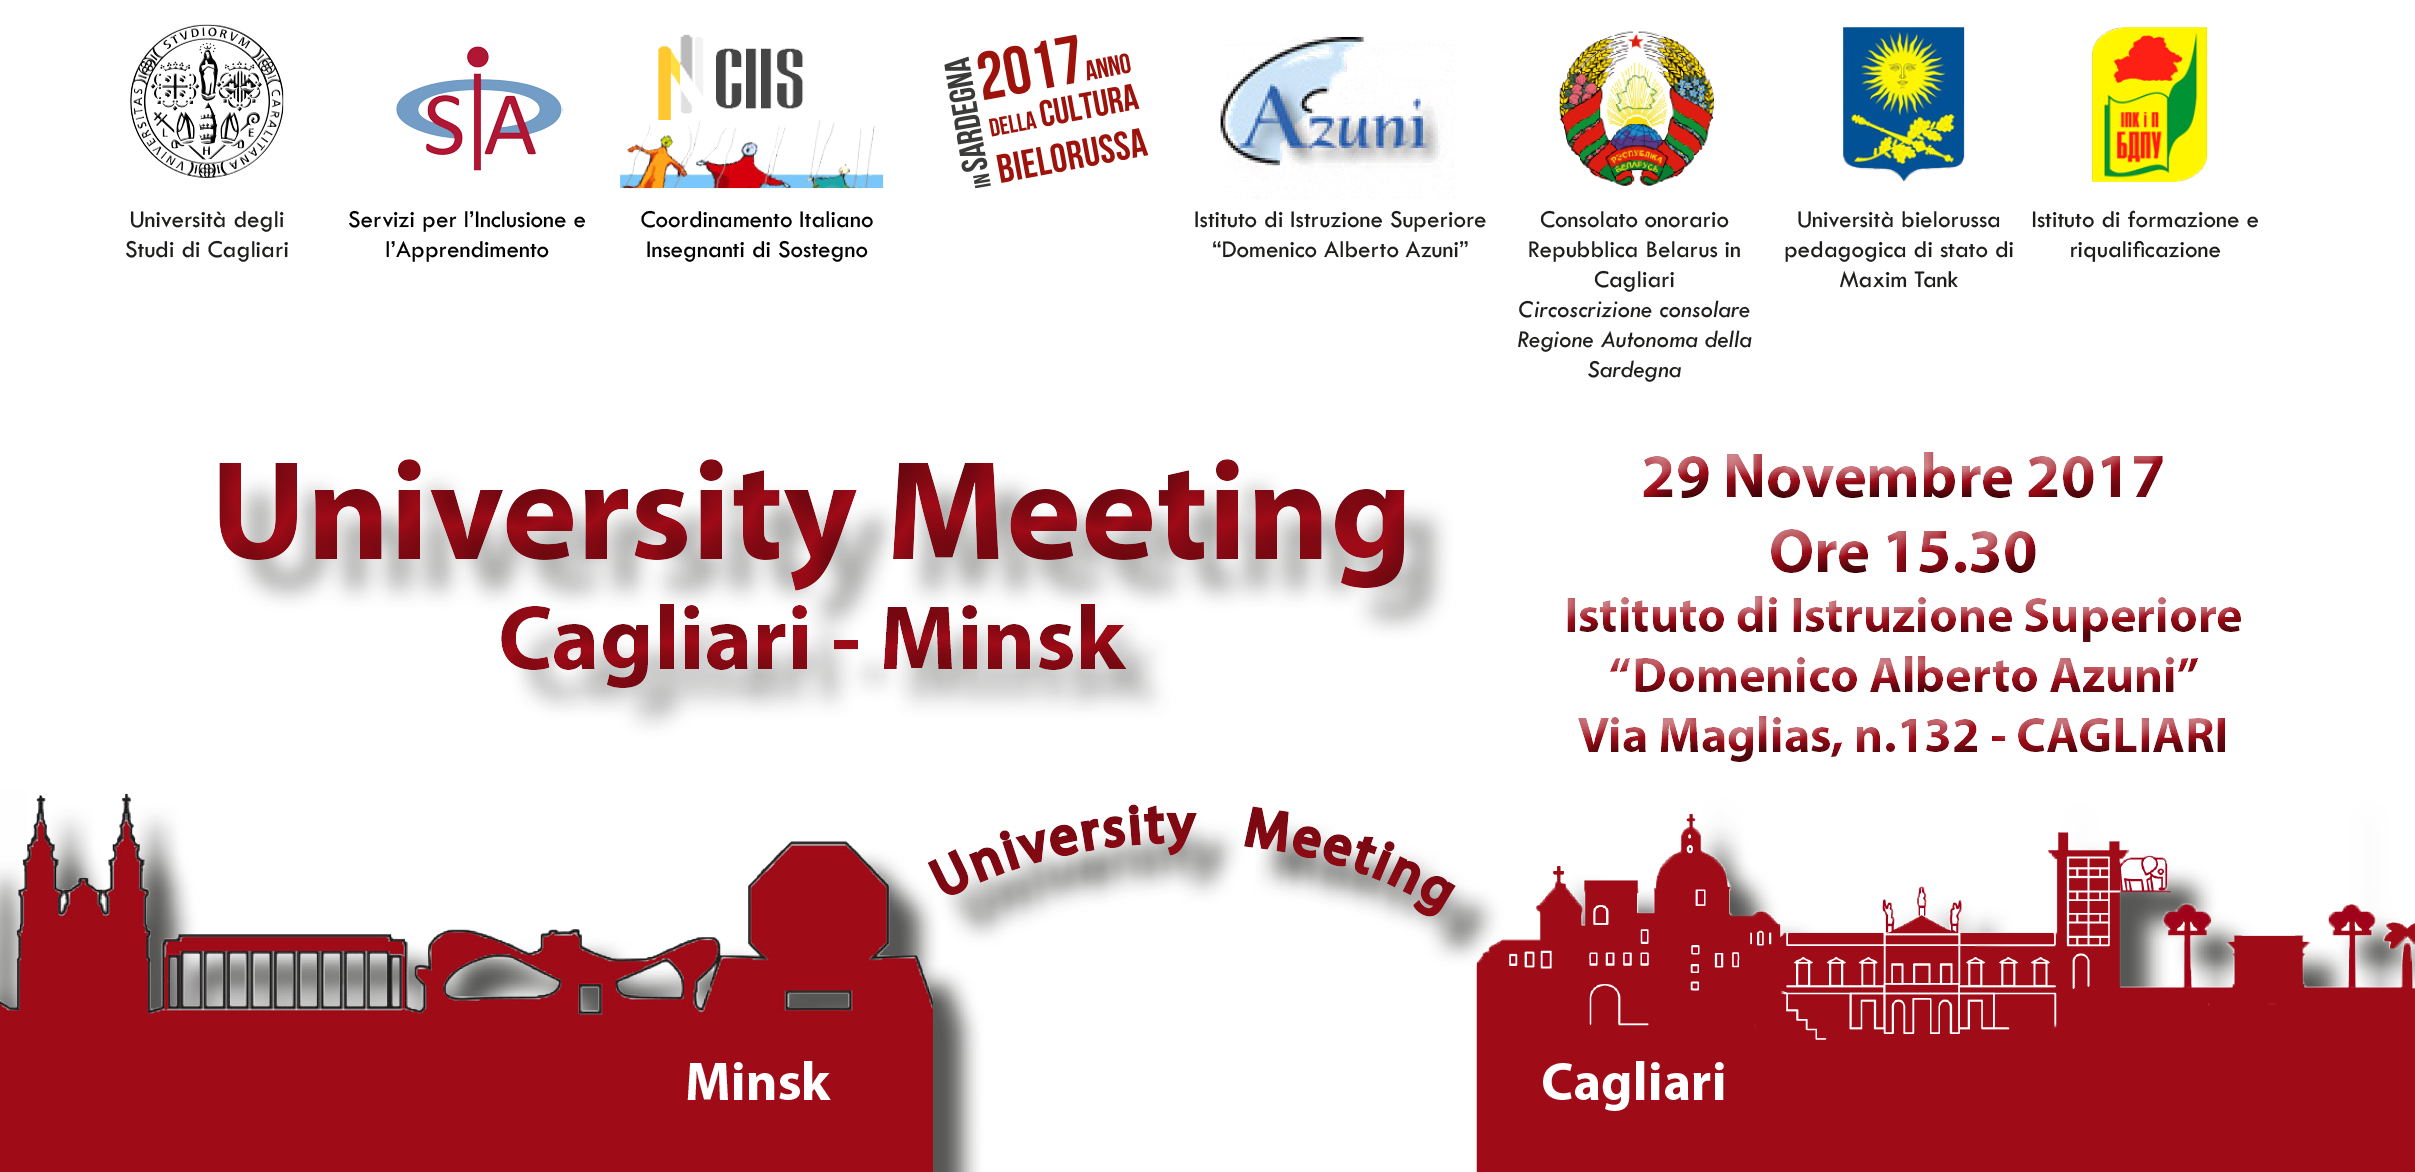 Seminario University Meeting on Inclusion, Cagliari - Minsk - 29 Novembre 2017